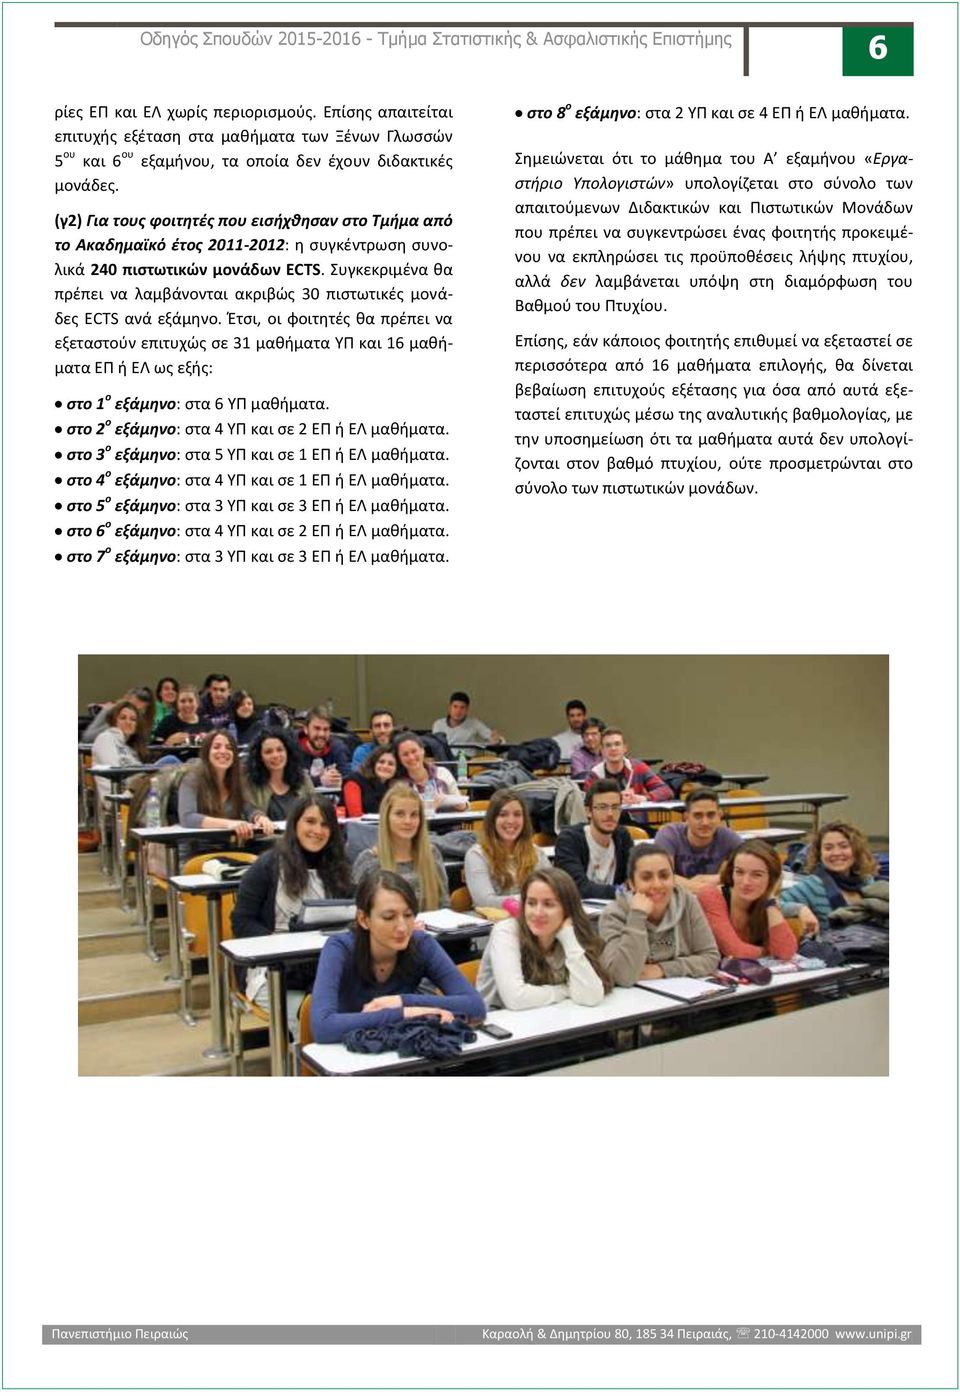 (γ2) Για τους φοιτητές που εισήχθησαν στο Τμήμα από το Ακαδημαϊκό έτος 2011-2012: η συγκέντρωση συνολικά 240 πιστωτικών μονάδων ECTS.